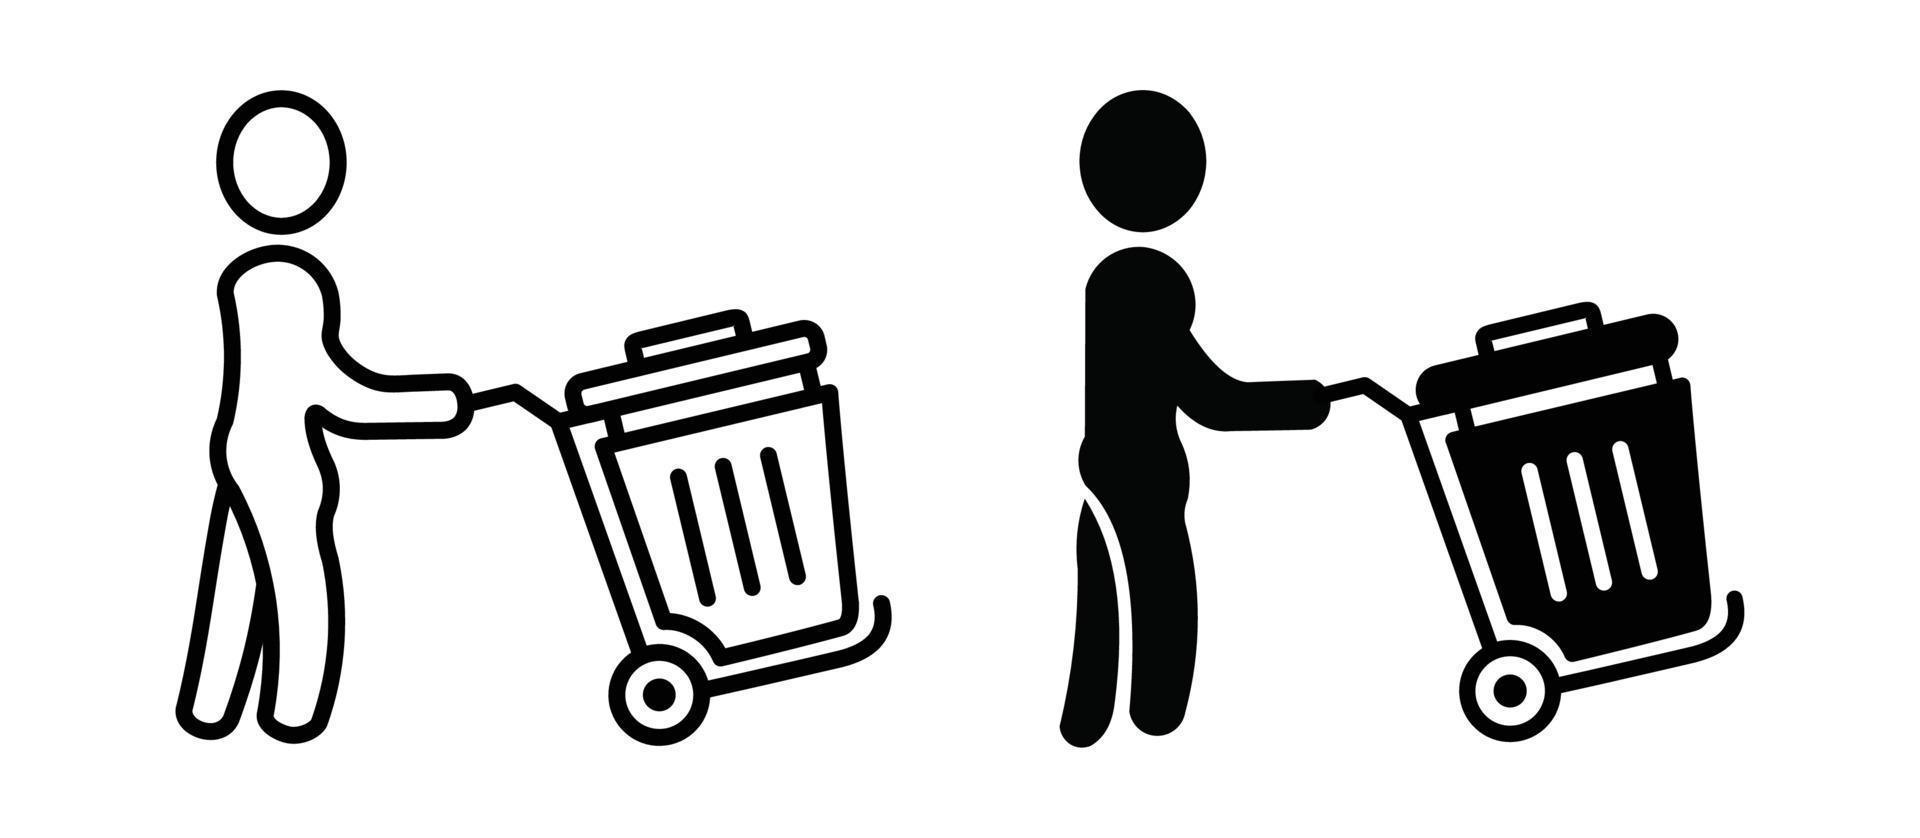 o lixo pode abrir o design de ilustração vetorial de ícone, conjunto de ícones de lixo ou coleta de lixo. vetor